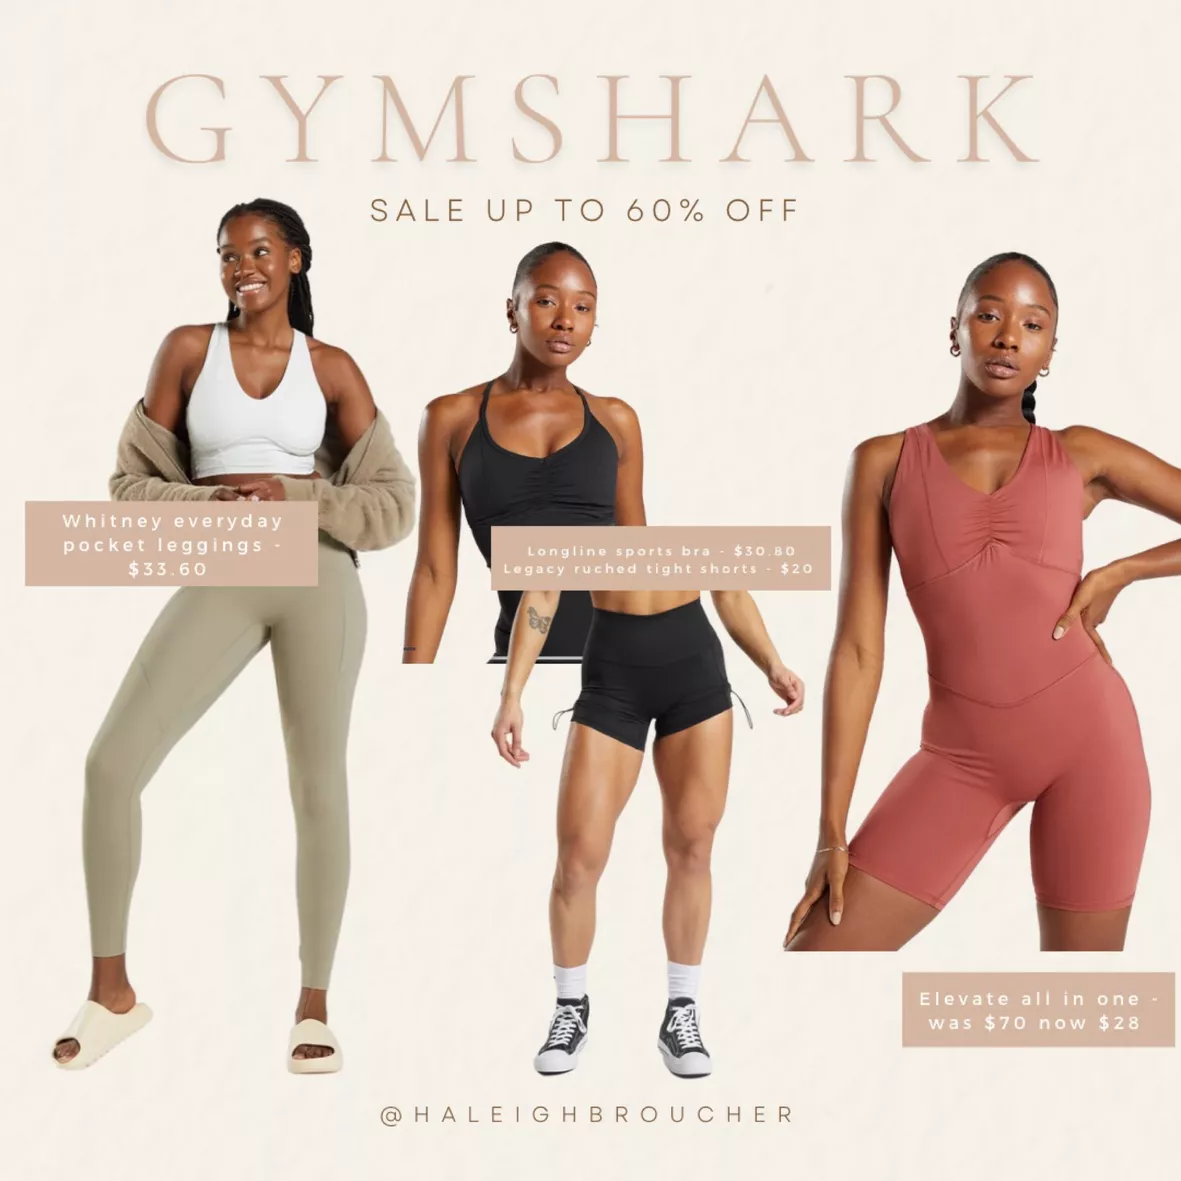 Gymshark Elevate Leggings - Black curated on LTK